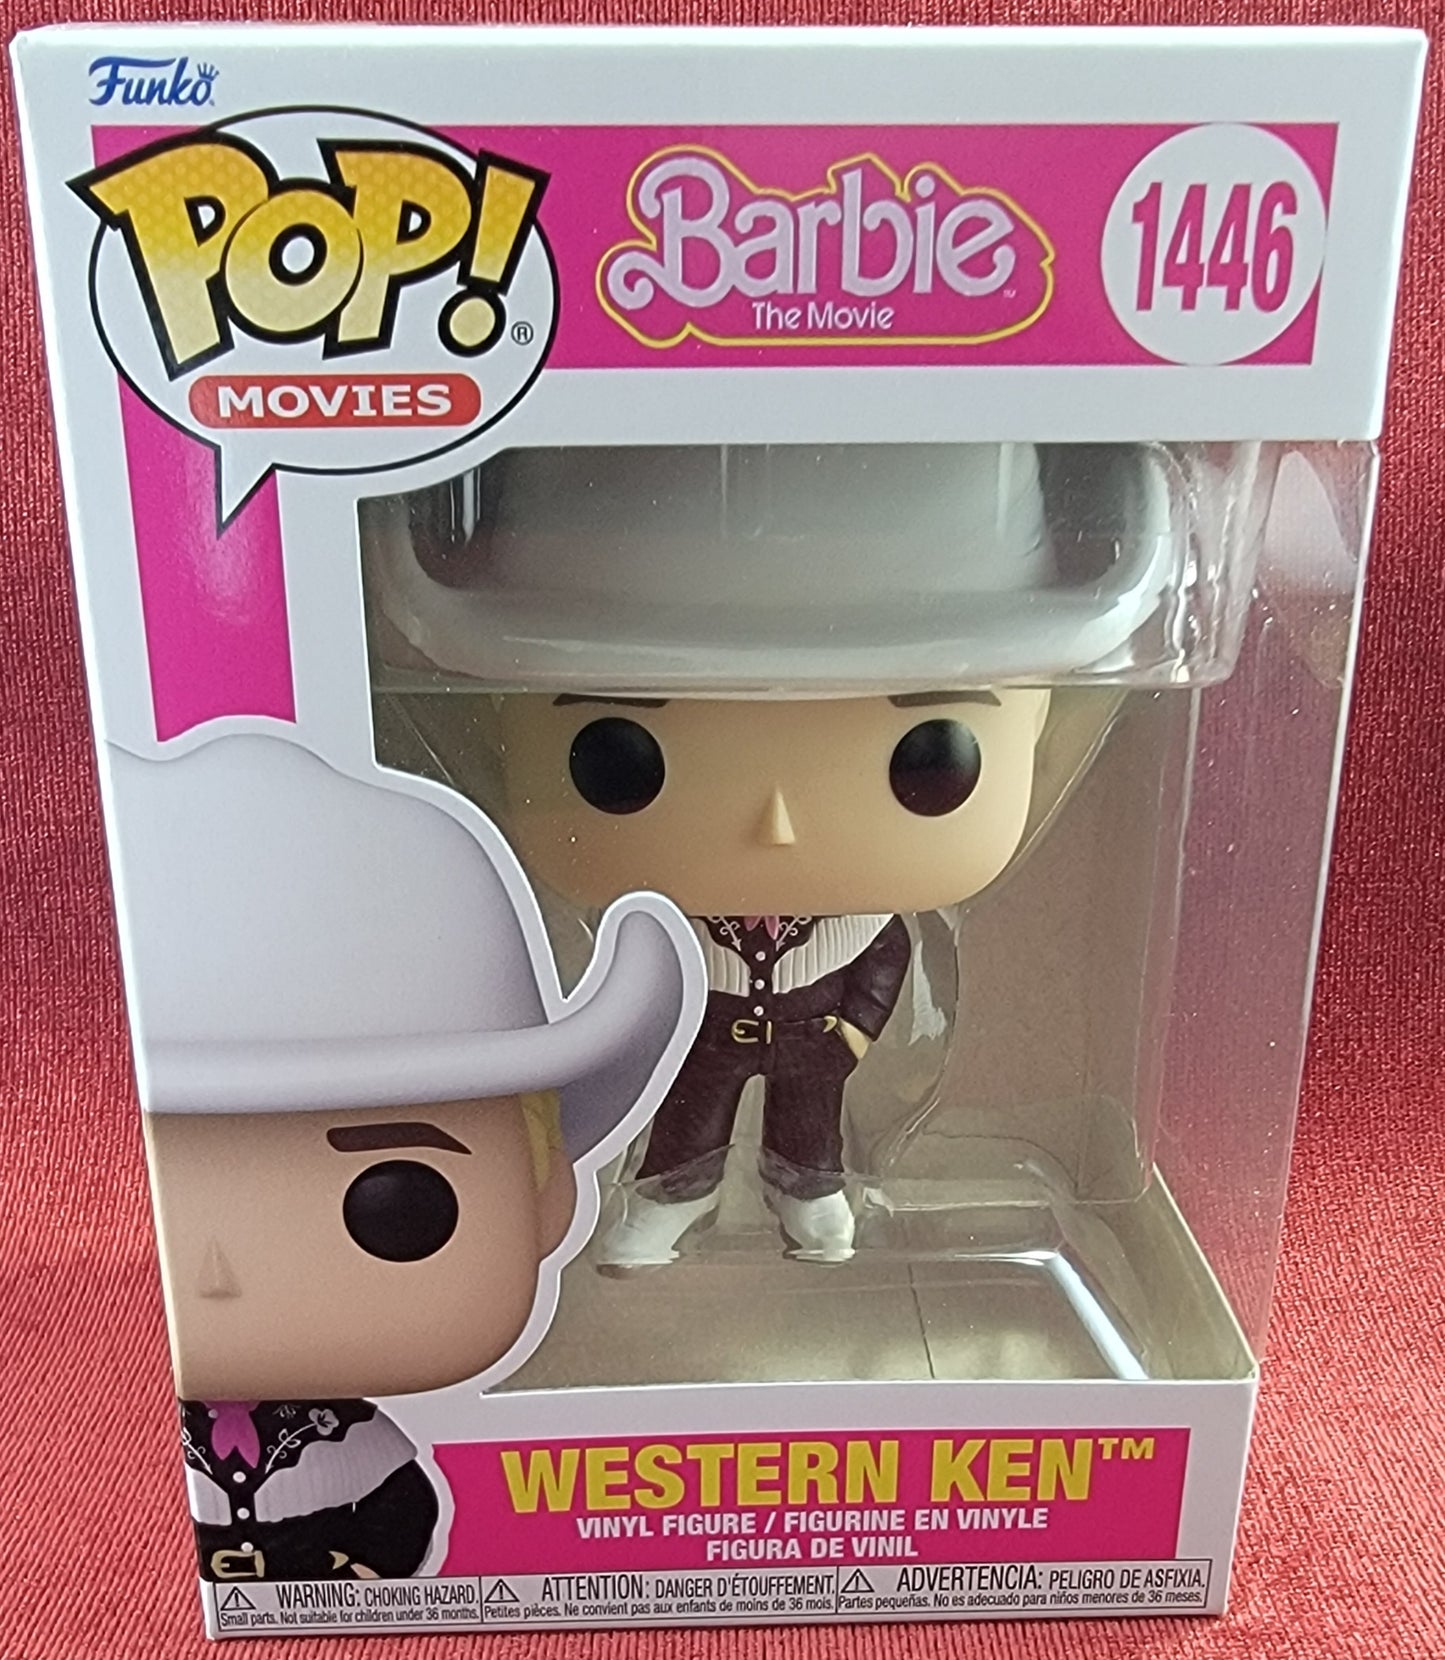 Western Ken funko # 1446 (nib)
With pop protector